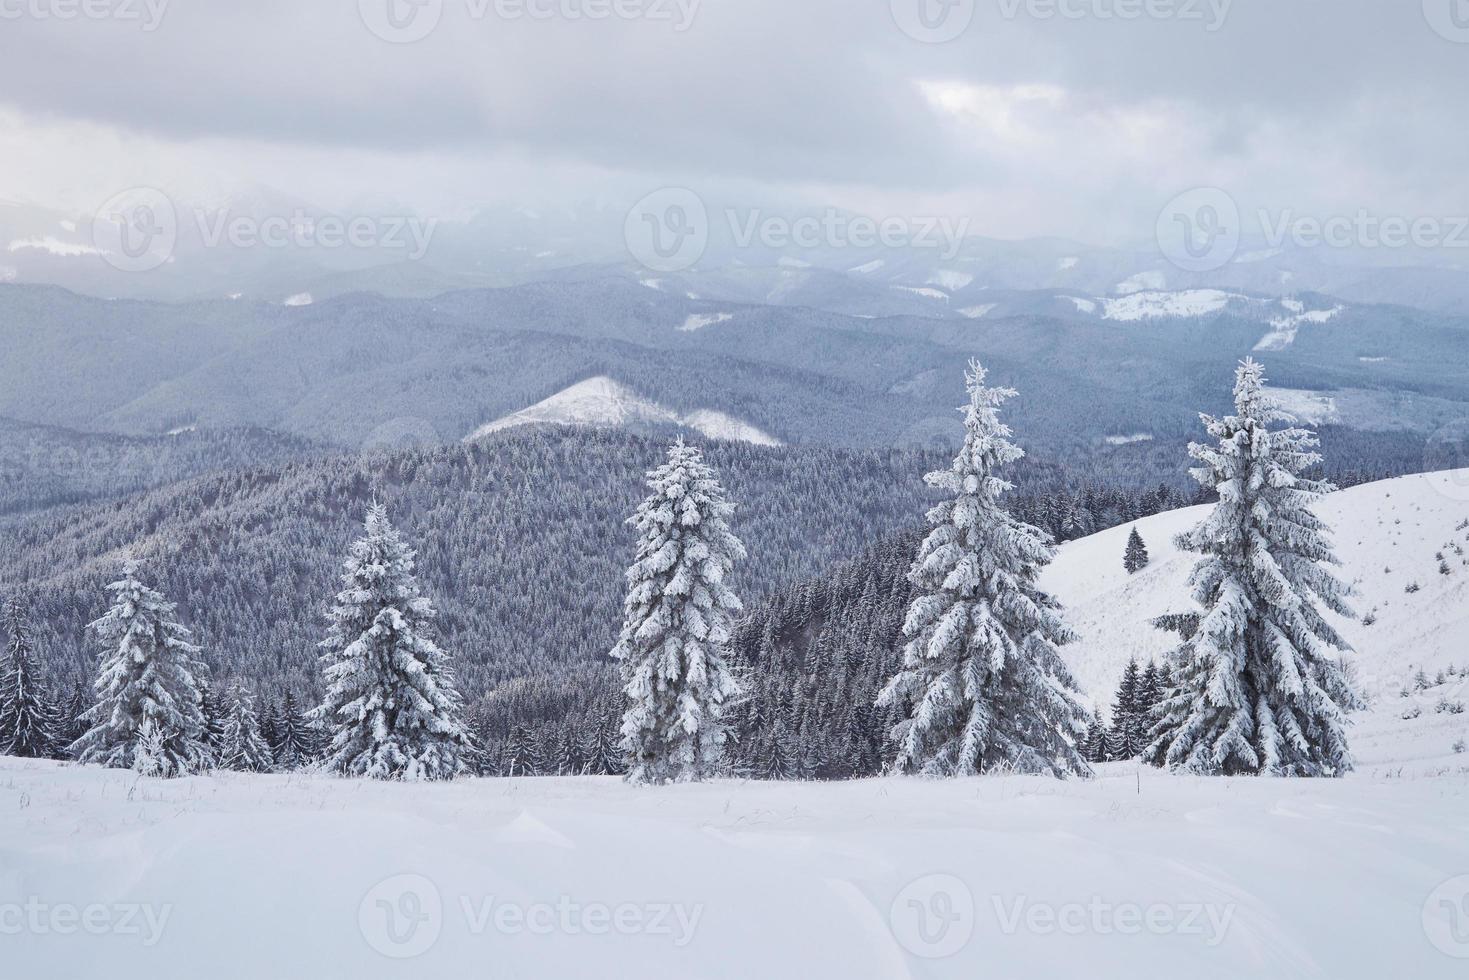 tolles Winterfoto in den Karpaten mit schneebedeckten Tannen. bunte Outdoor-Szene, Frohes neues Jahr-Feier-Konzept. künstlerischer Stil nachbearbeitetes Foto